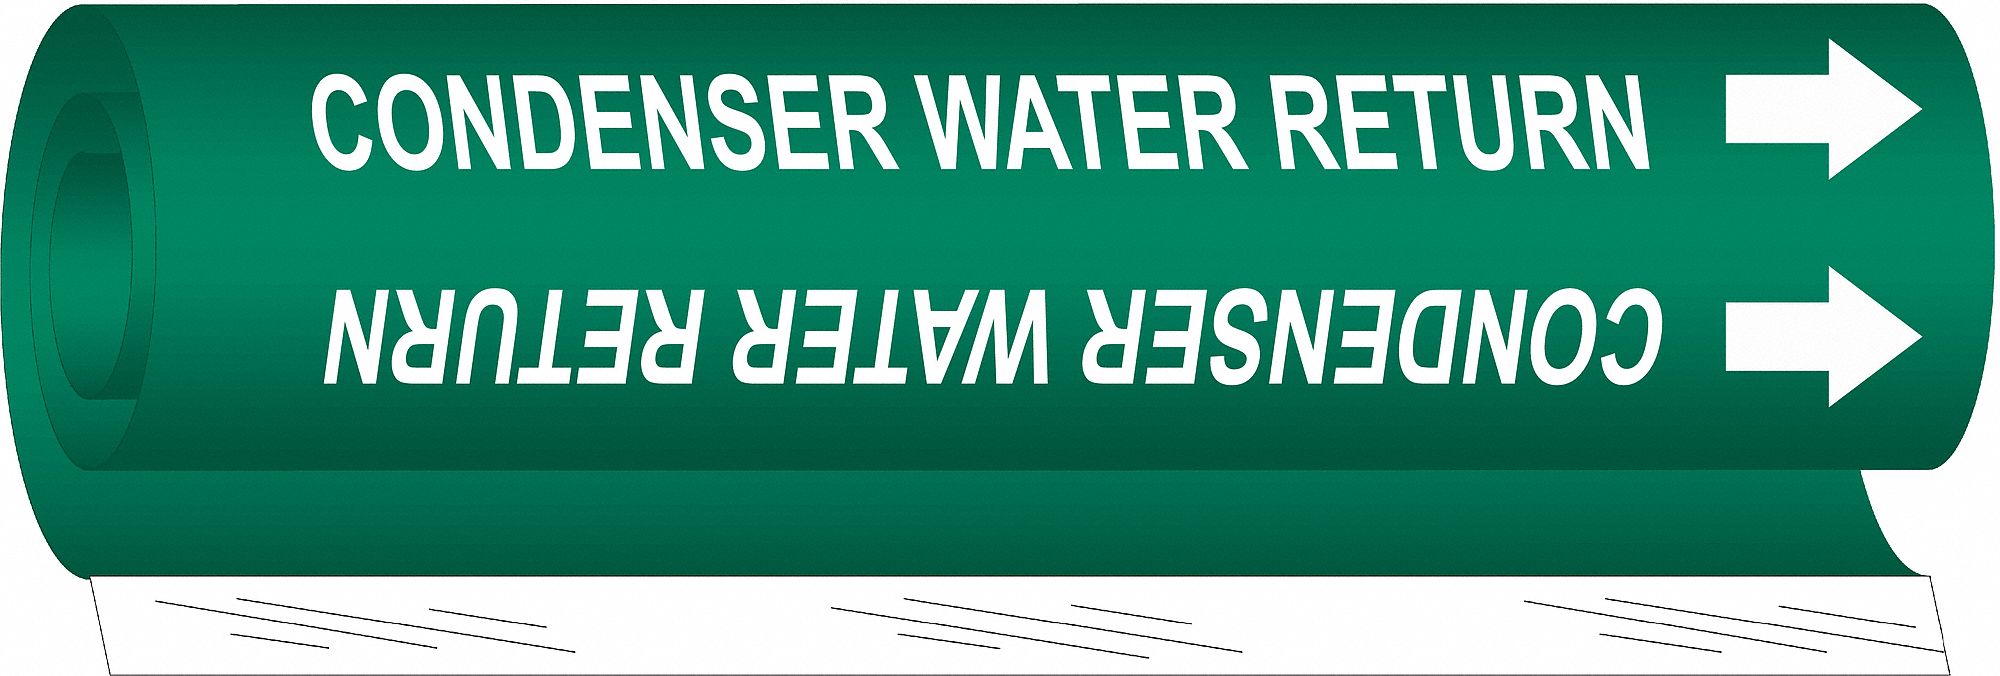 Pipe Marker,Condenser Water Return,Green